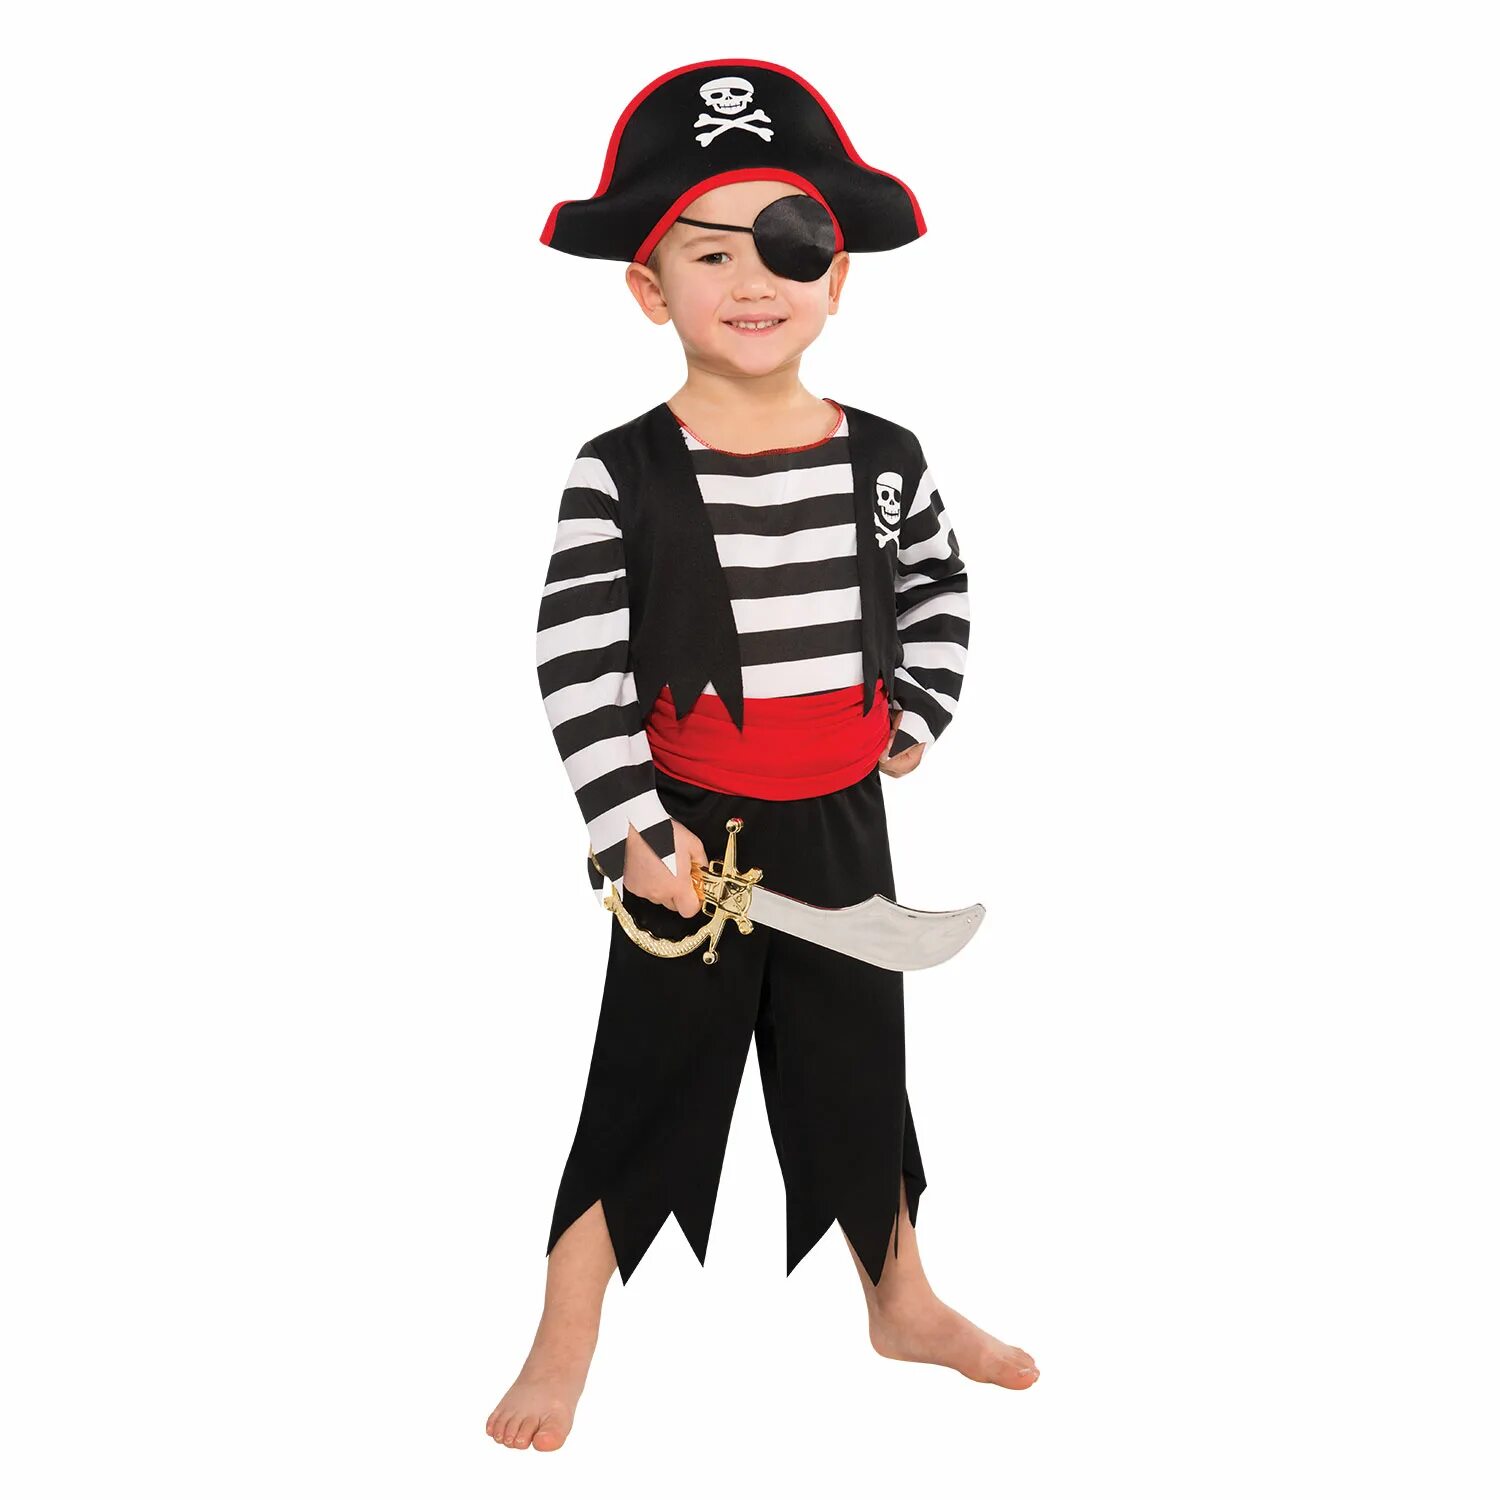 Где нарядные пираты. Костюм пирата. Костюм пирата для детей. Новогодний костюм пирата для мальчика. Пиратский костюм для детей.